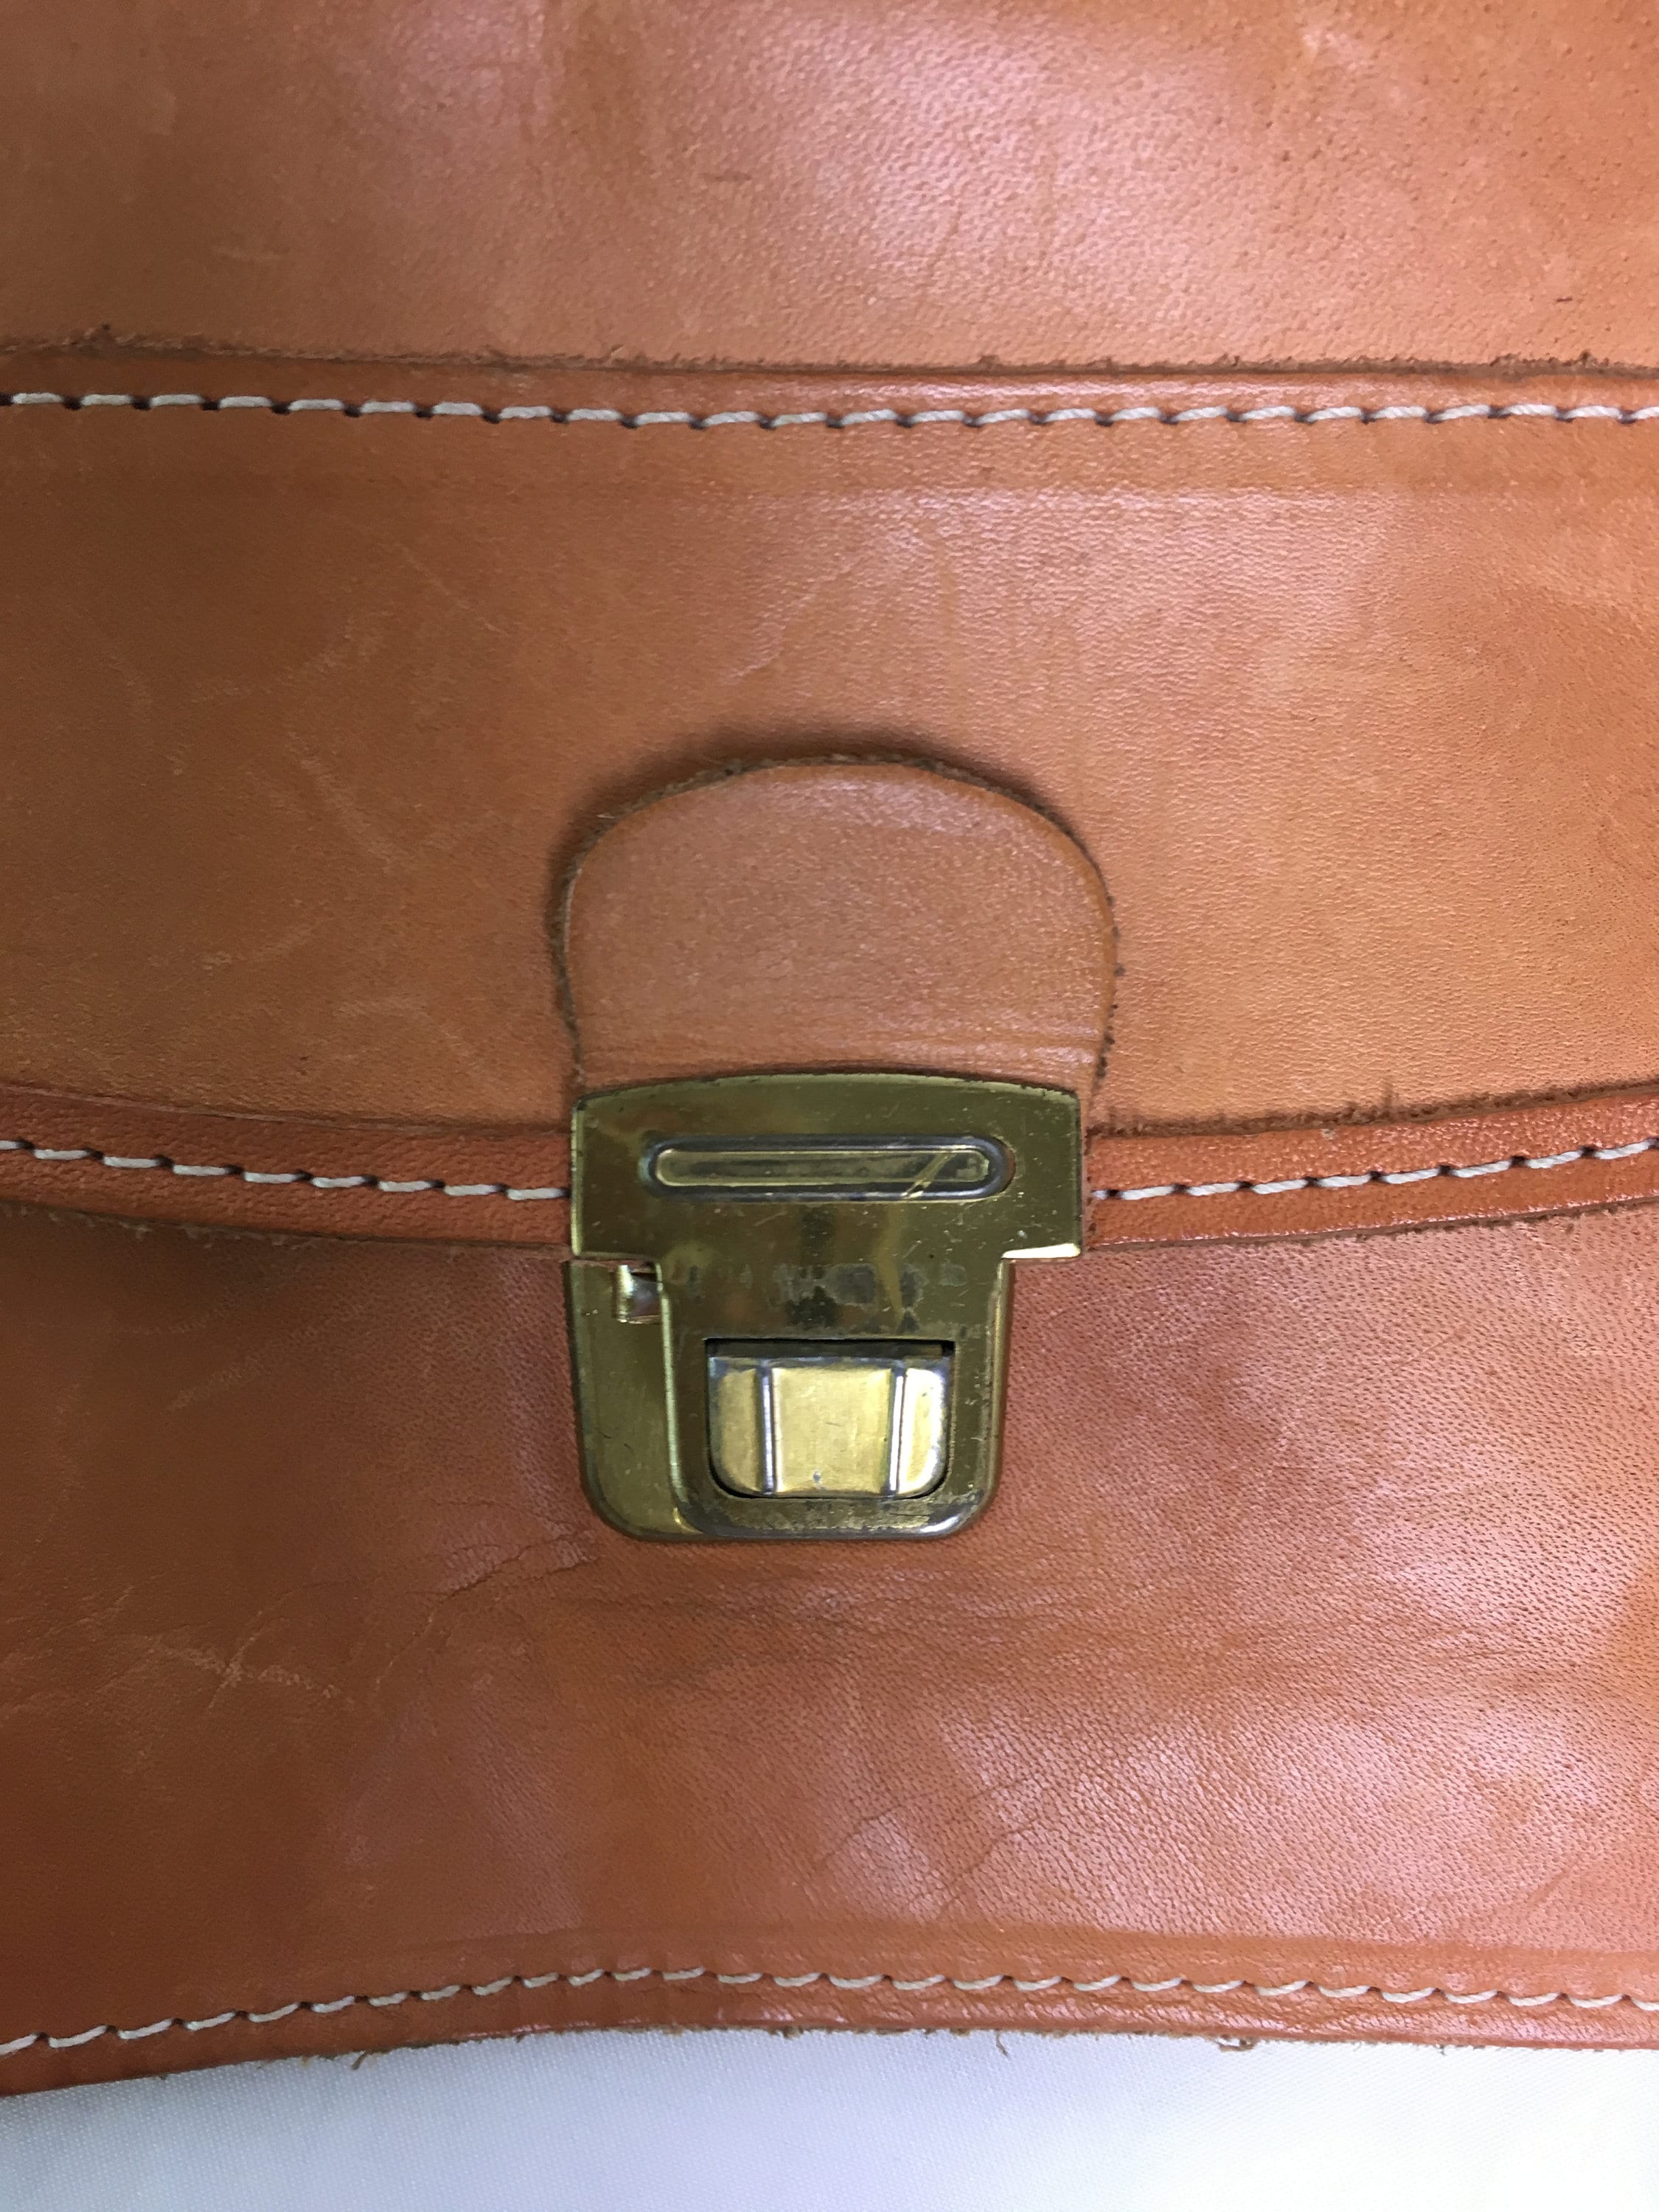 Old Mans Leatherette Wrist Bag